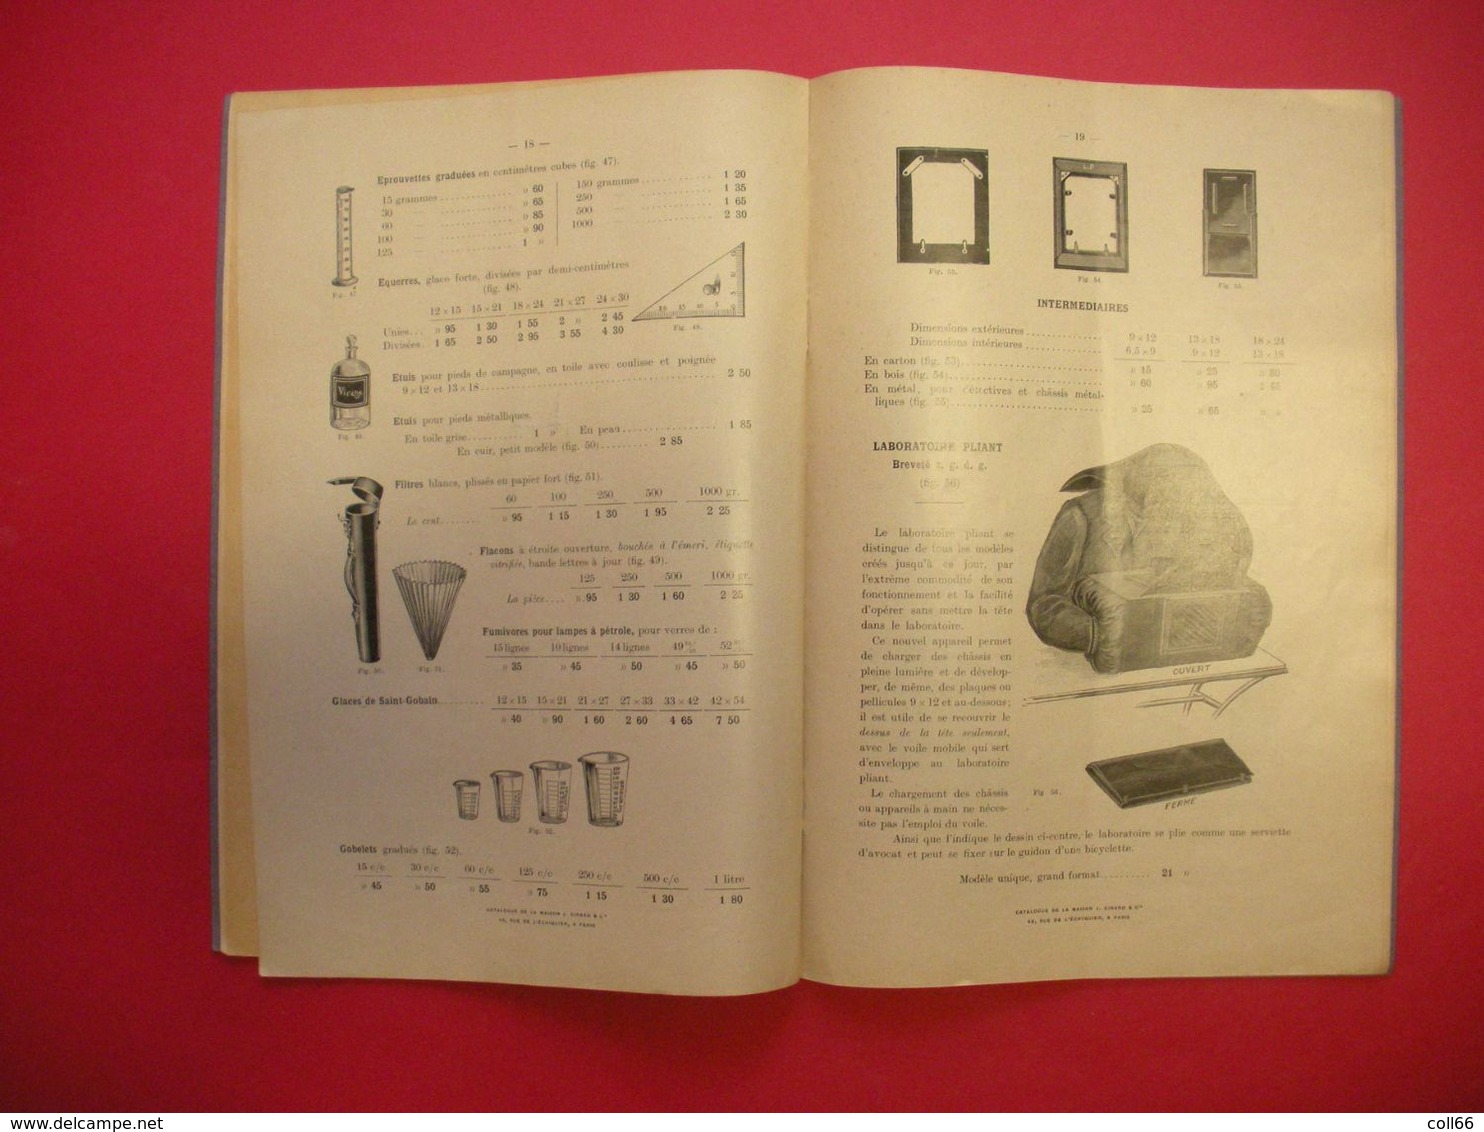 Catalogue détaillé Tarif et Produits et Accessoires Photographiques J.Girard & Cie nombreuses illustrations 18.5x27.5cms